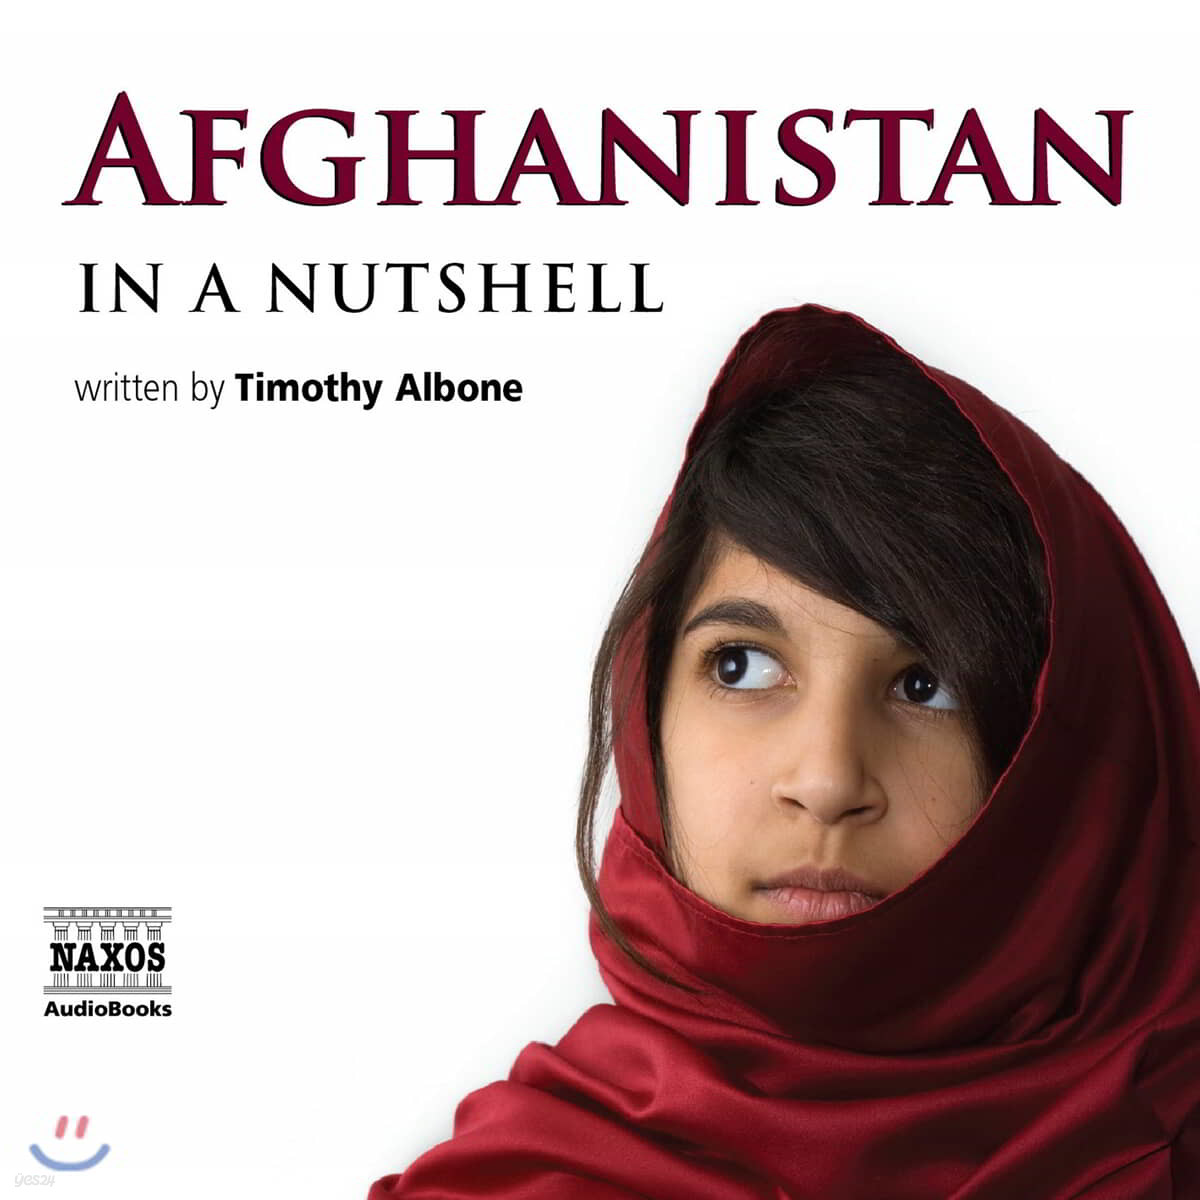 Afghanistan - In a Nutshell